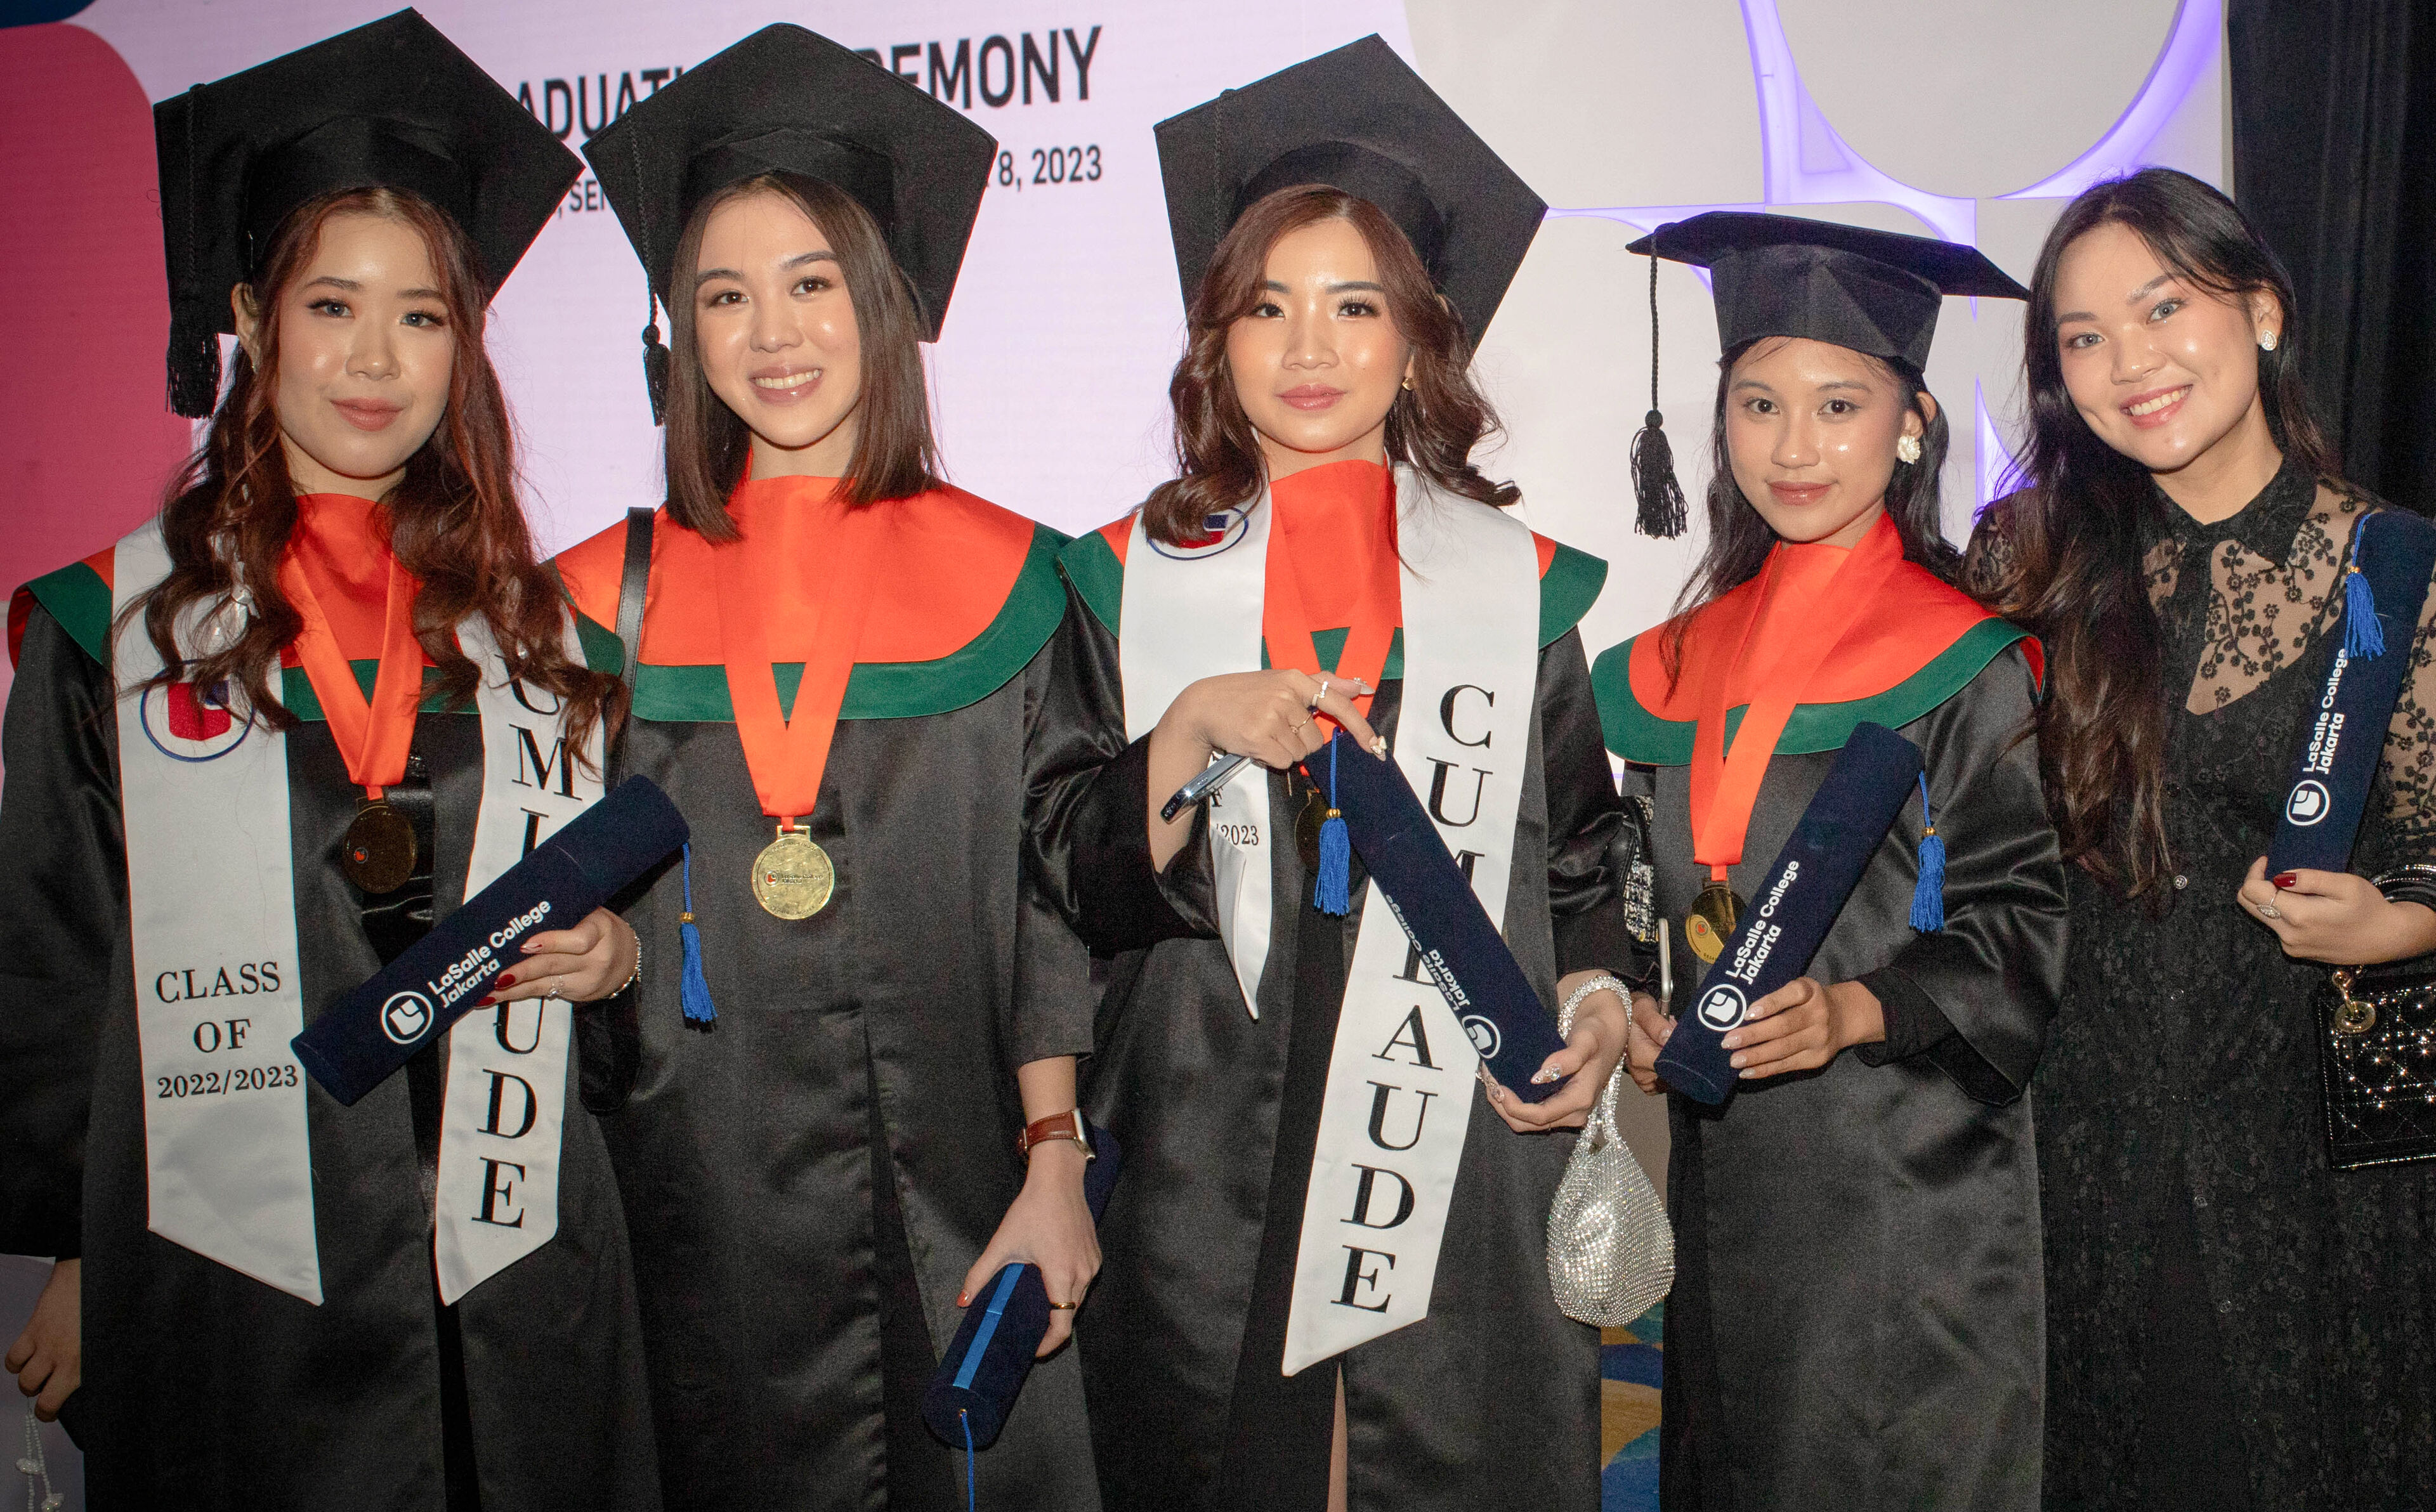 Graduates from LaSalle College Jakarta 